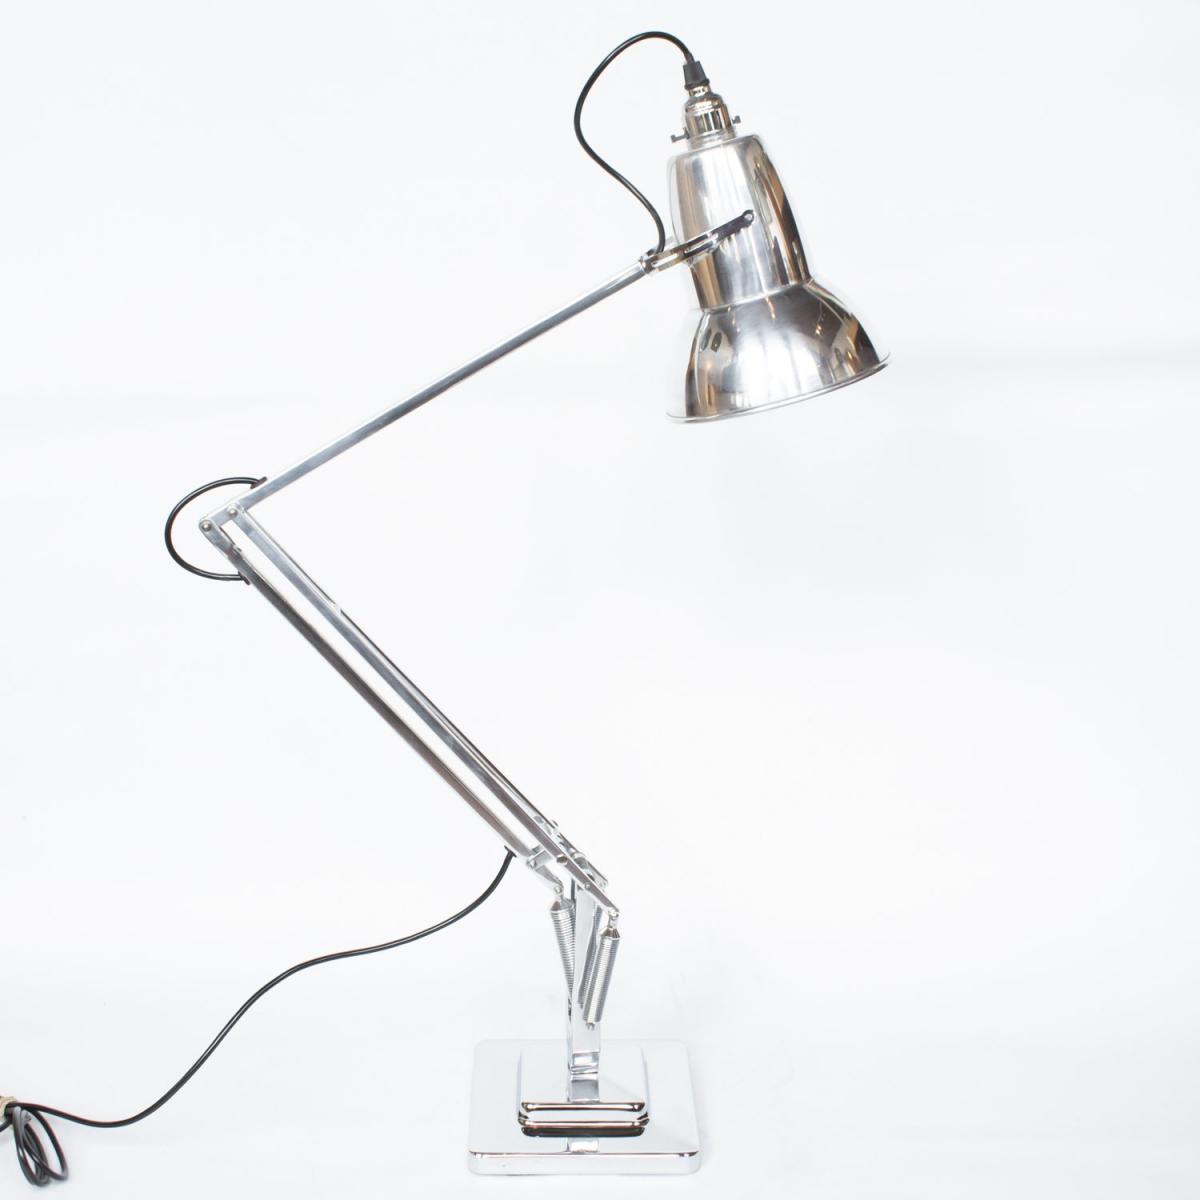 Anglepoise Desk Lamp, Herbert Terry & Sons 